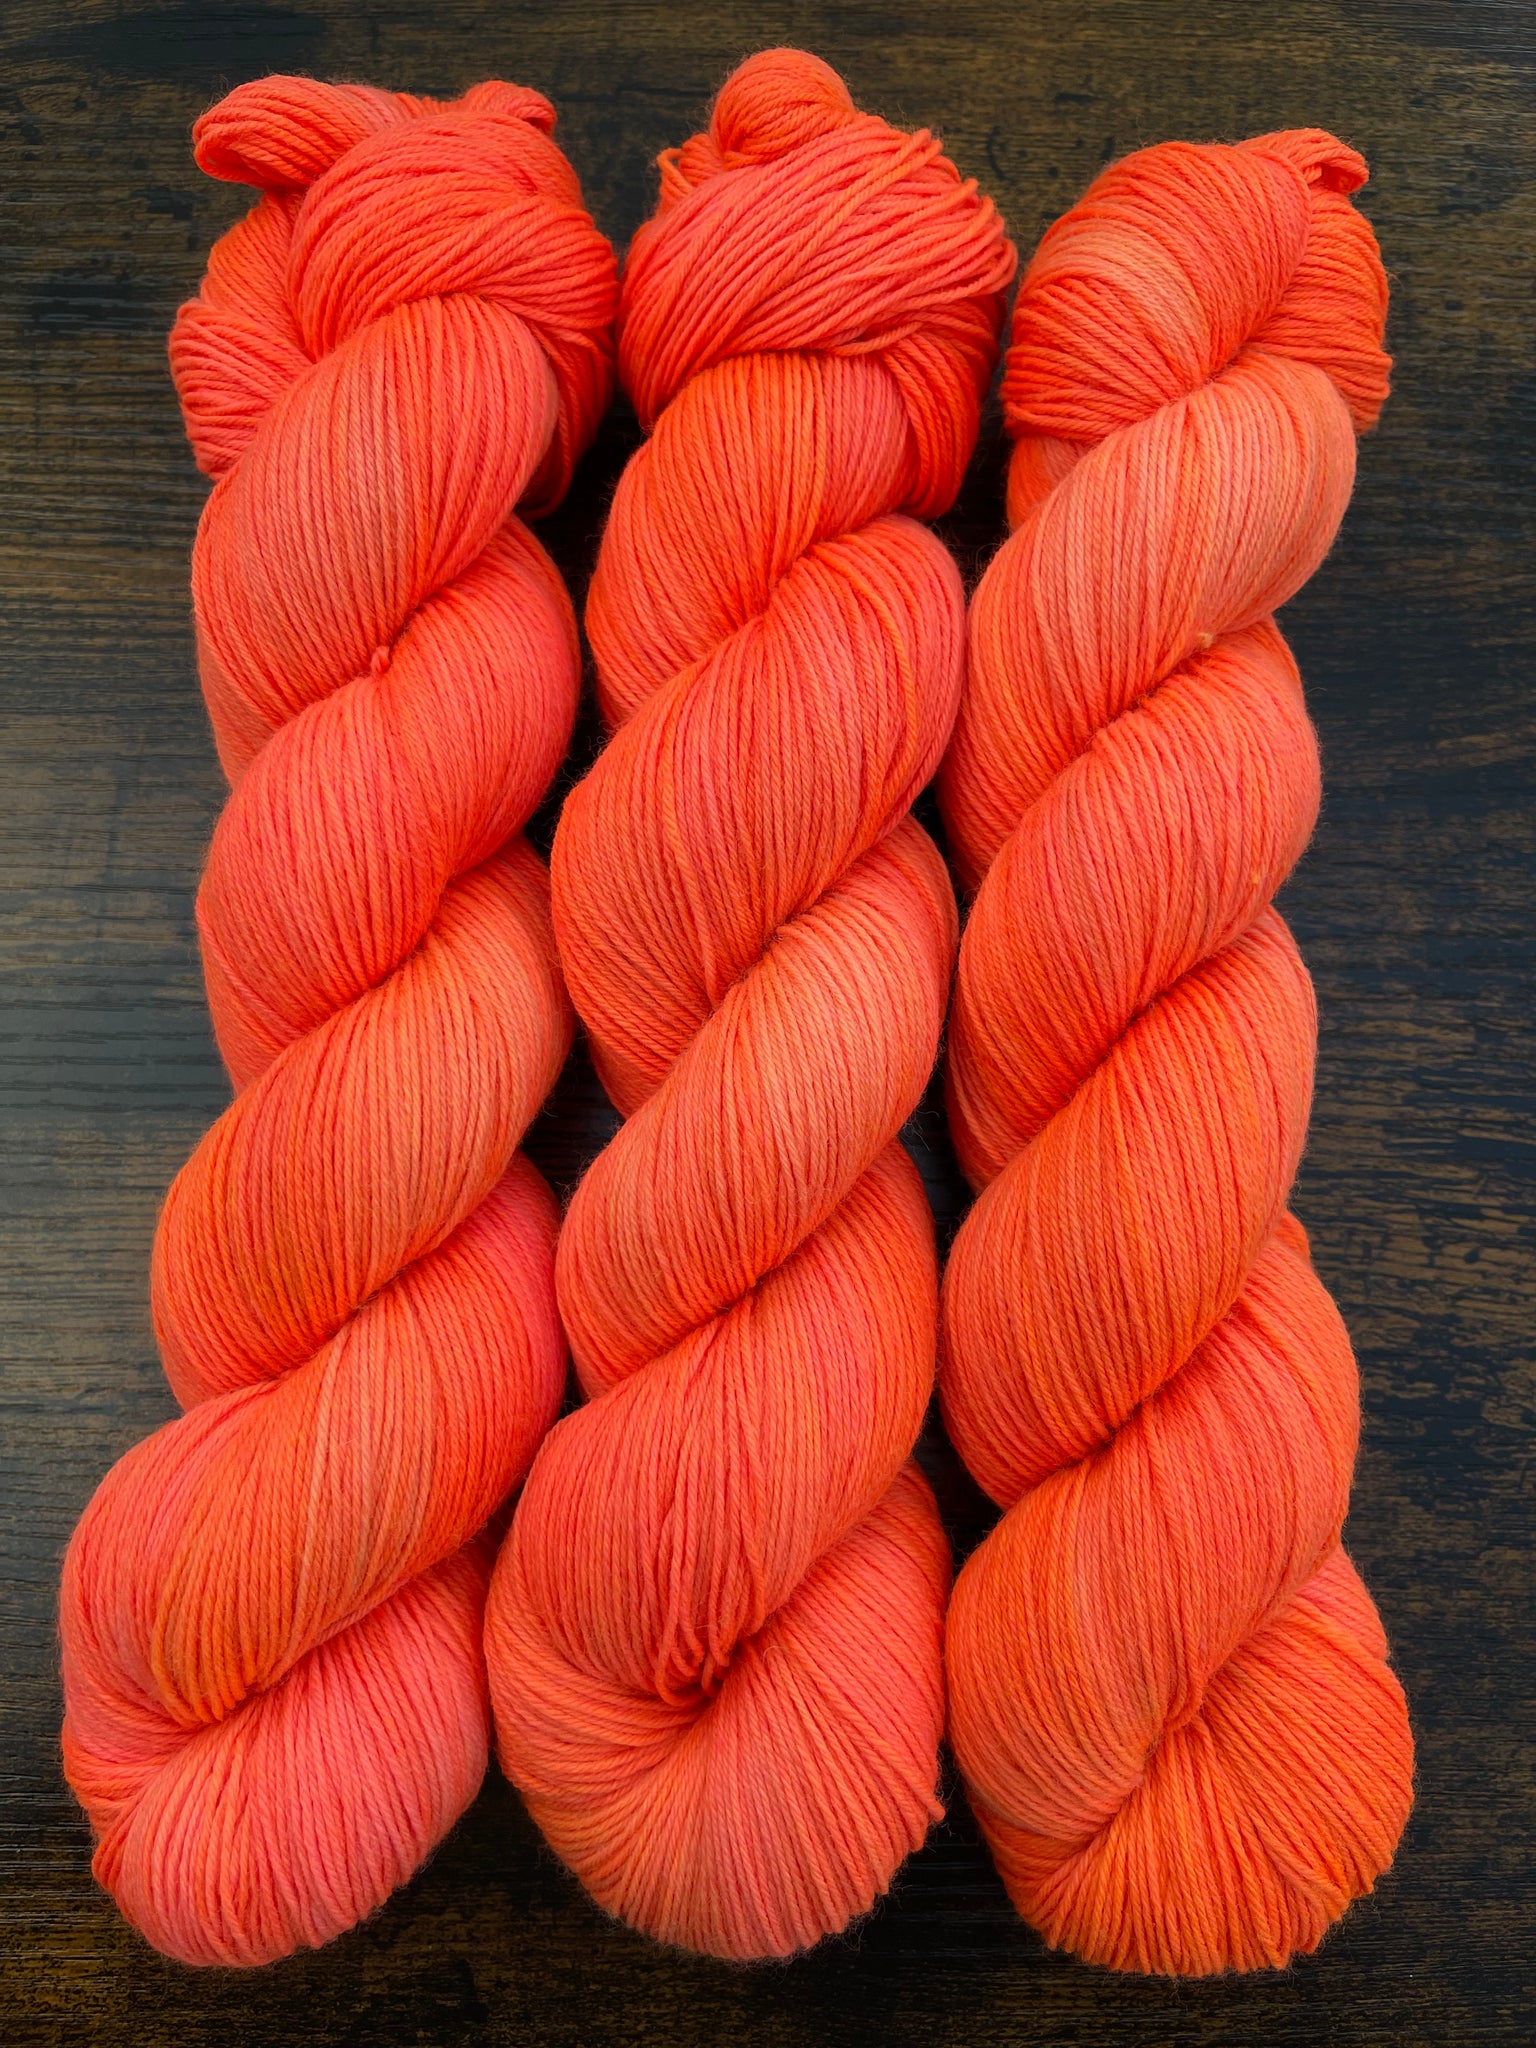 Tangy Tangerine - Superwash Merino & Nylon - Hand Dyed Neon Orange Yar –  Rainbow Fusions